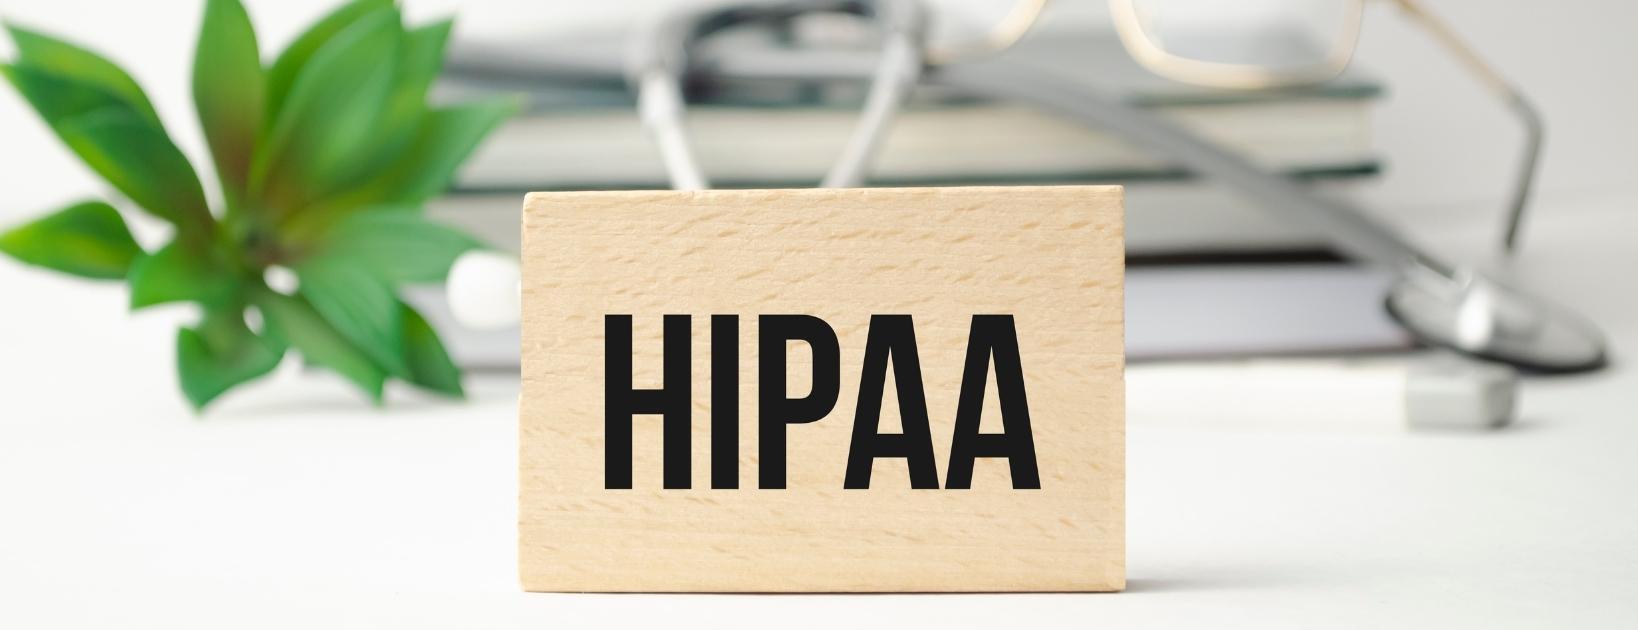 HIPAA Training Required